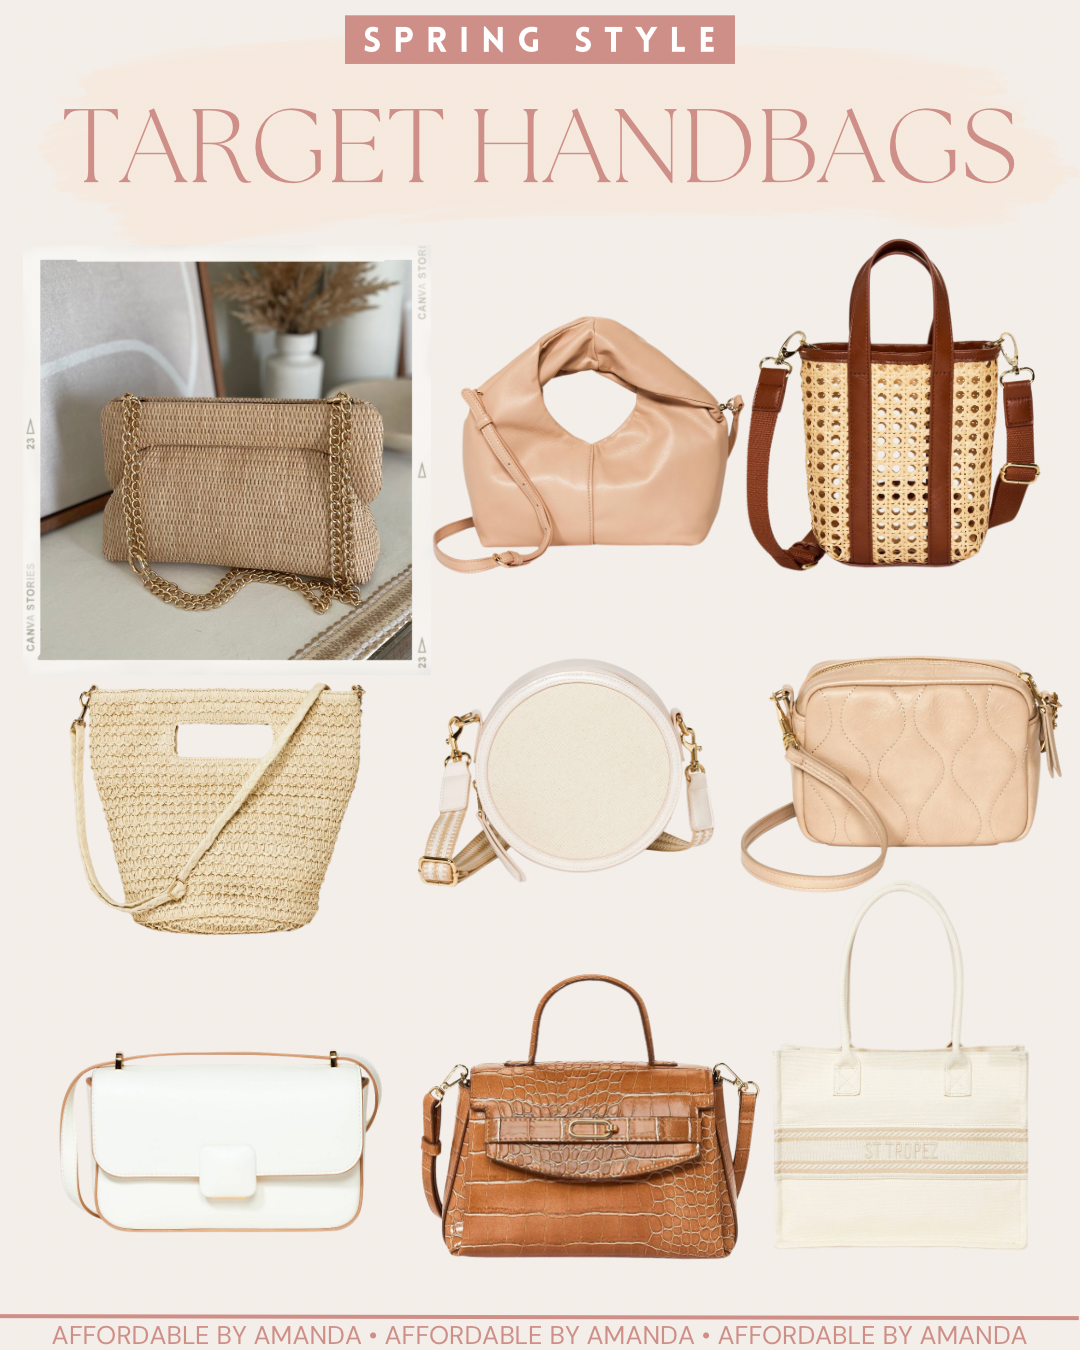 Spring Handbags & Purses at Target - Affordable by Amanda 